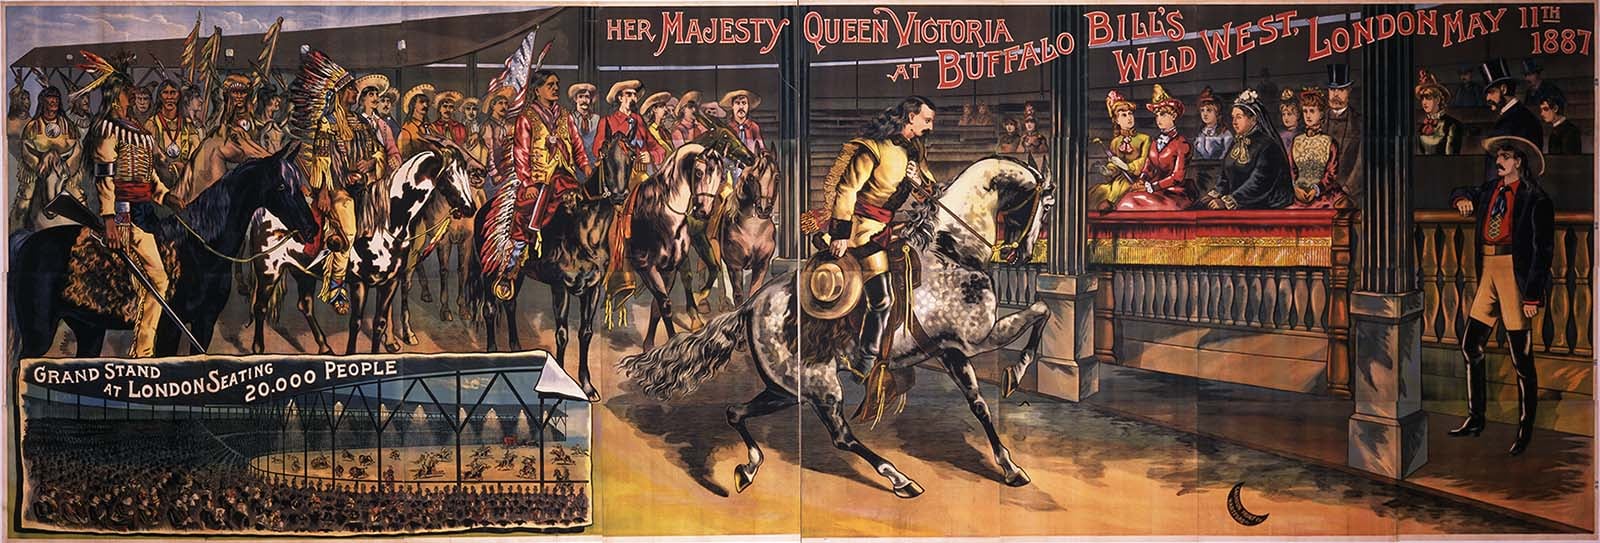 TZ61 Vintage Buffalo Bill Circus Show Poster A1 A2 A3 